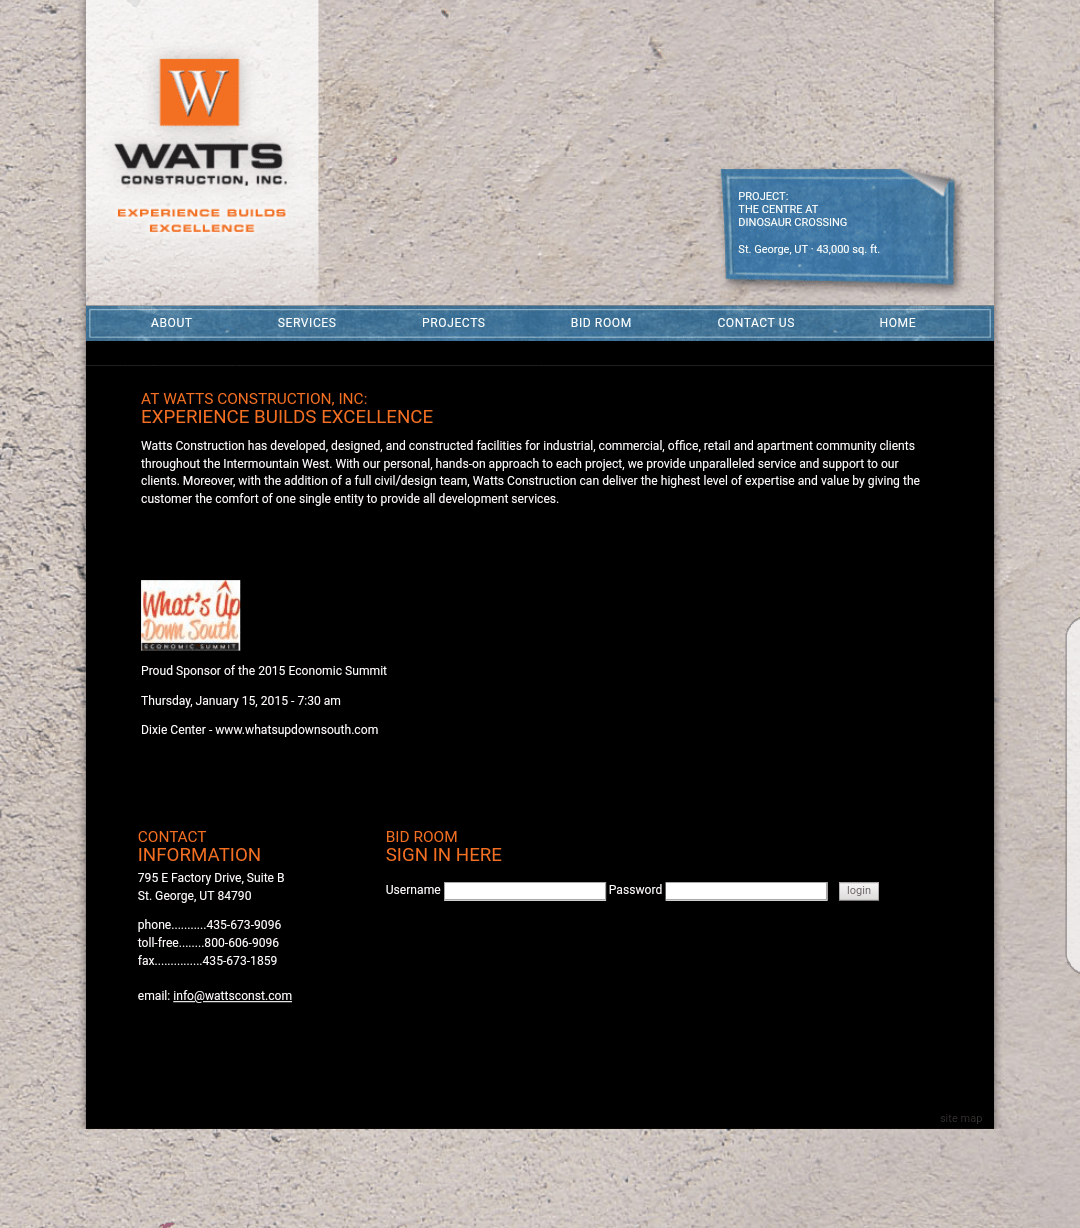 Old wattsconst.com website